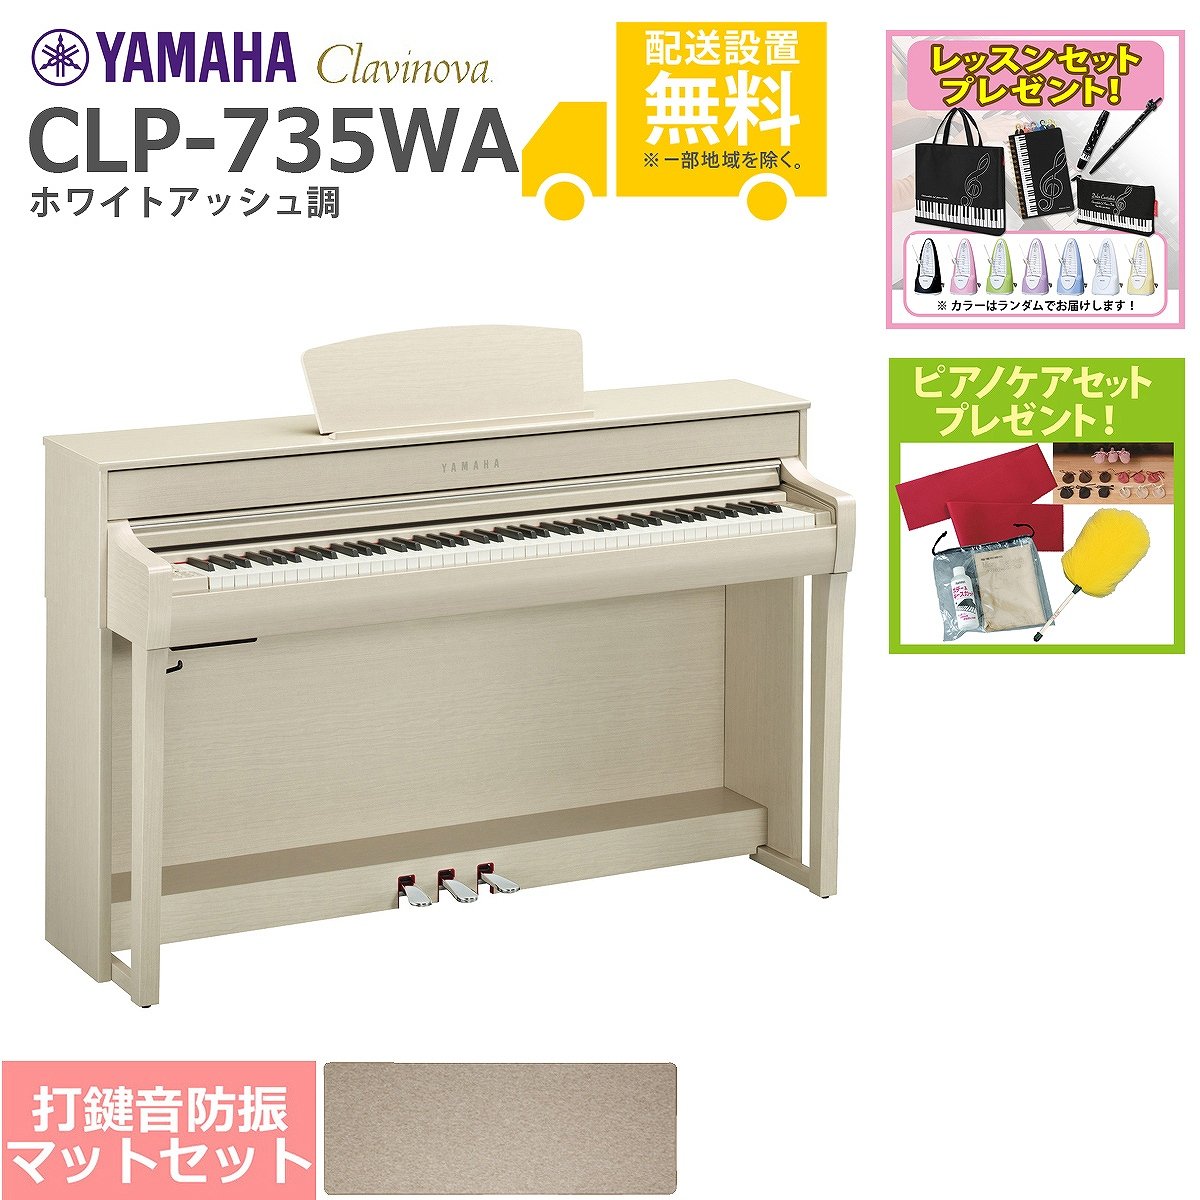 全国組立設置無料)YAMAHA / CLP-735WA ホワイトアッシュ調 電子ピアノ ...